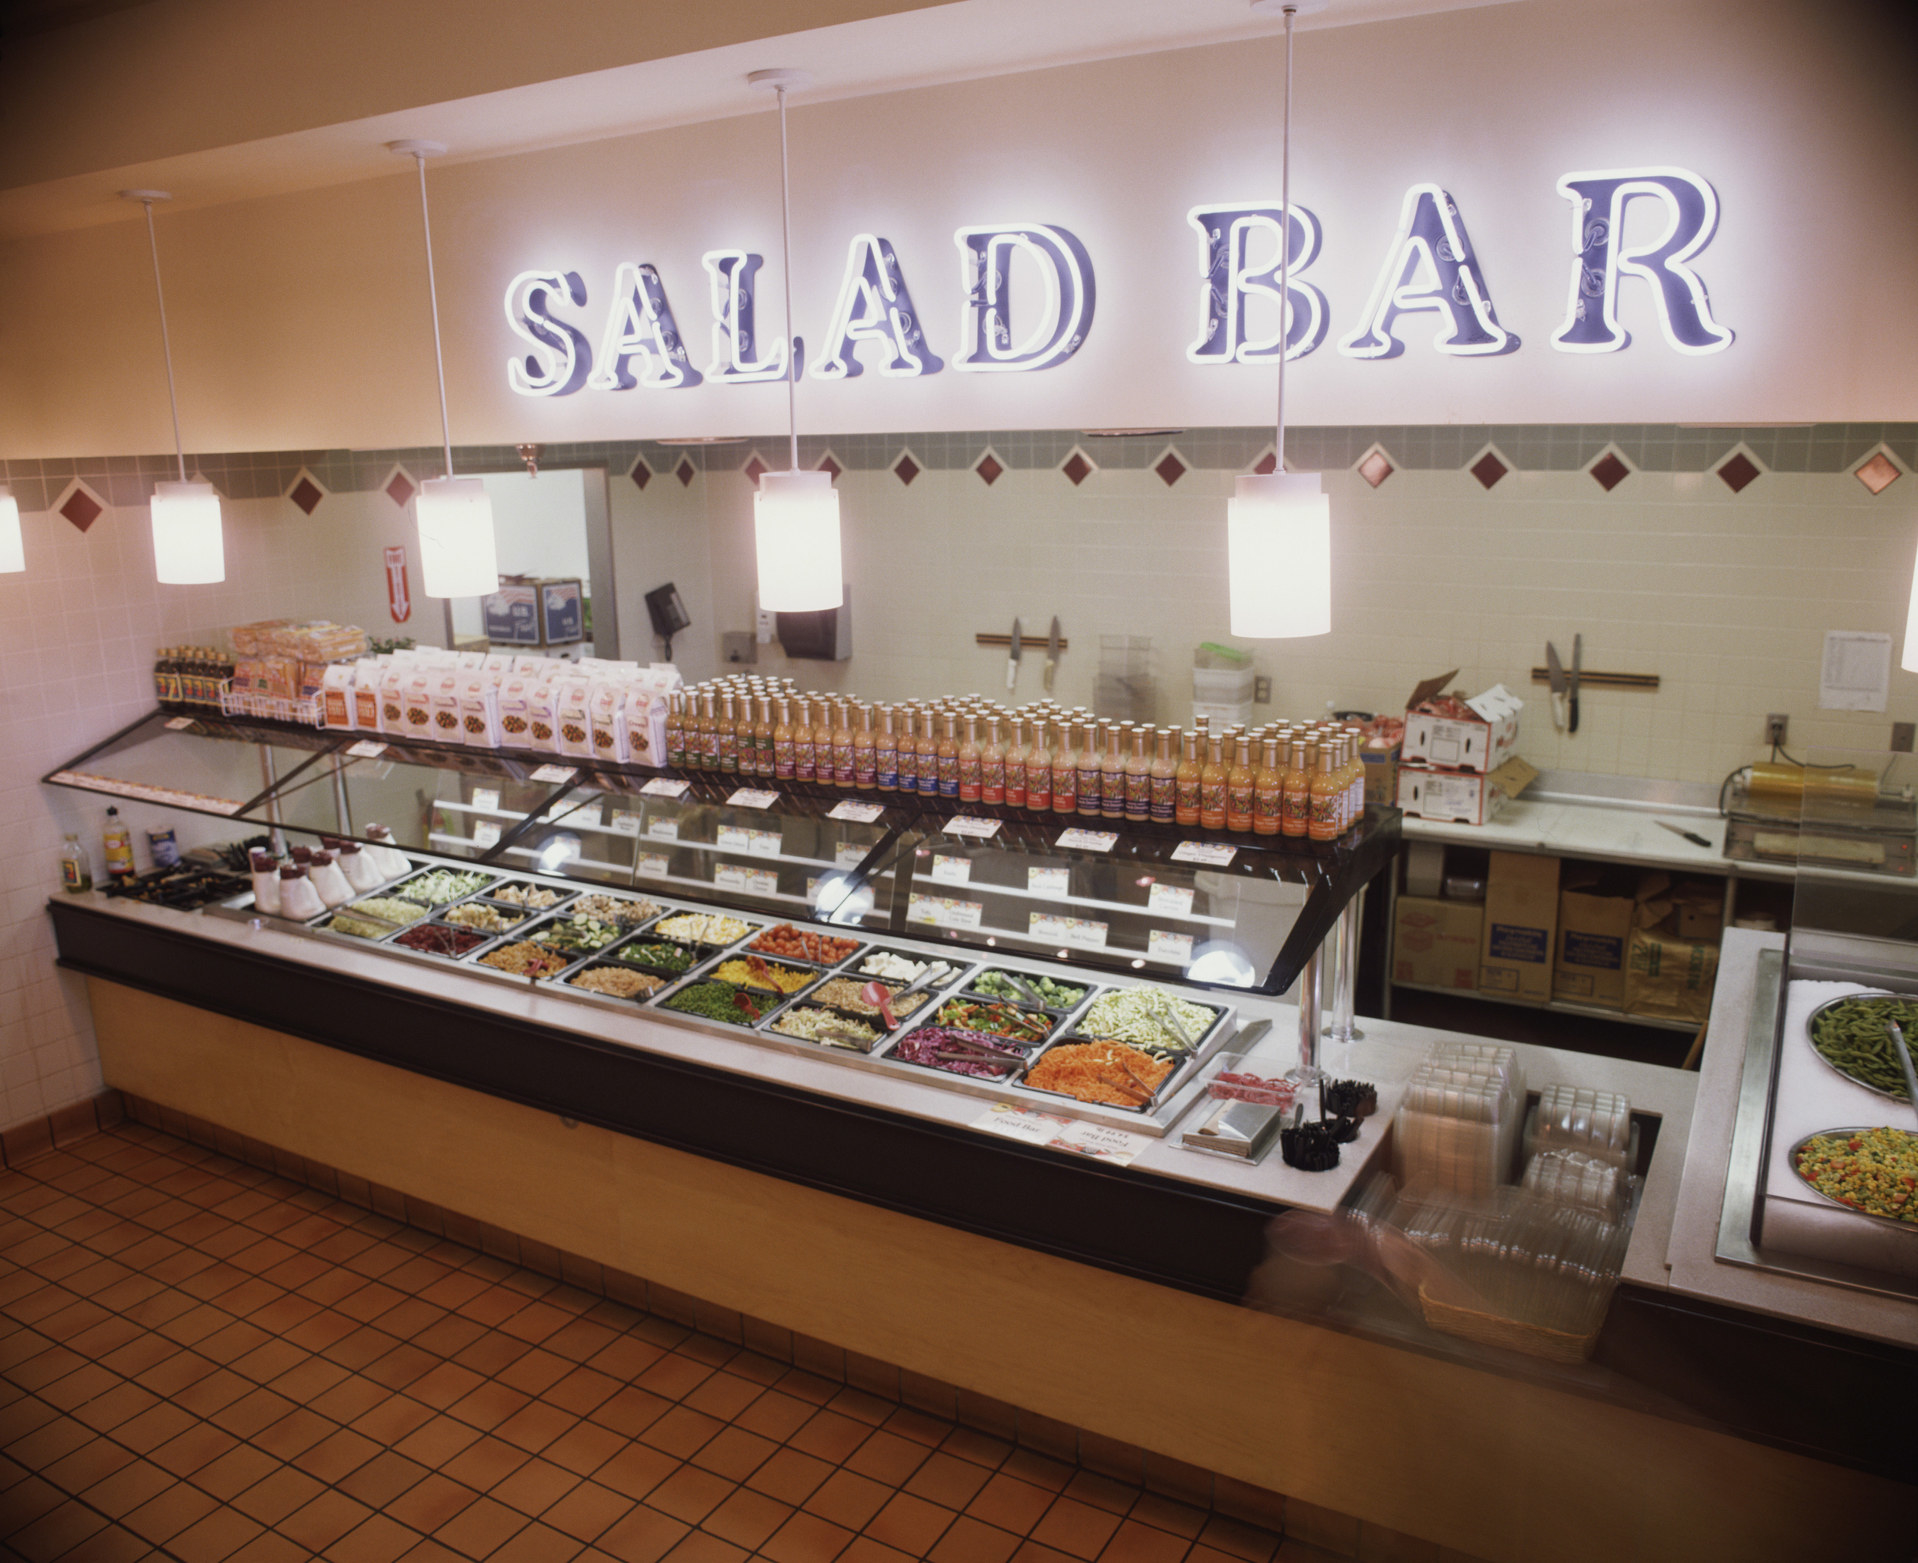 A salad bar